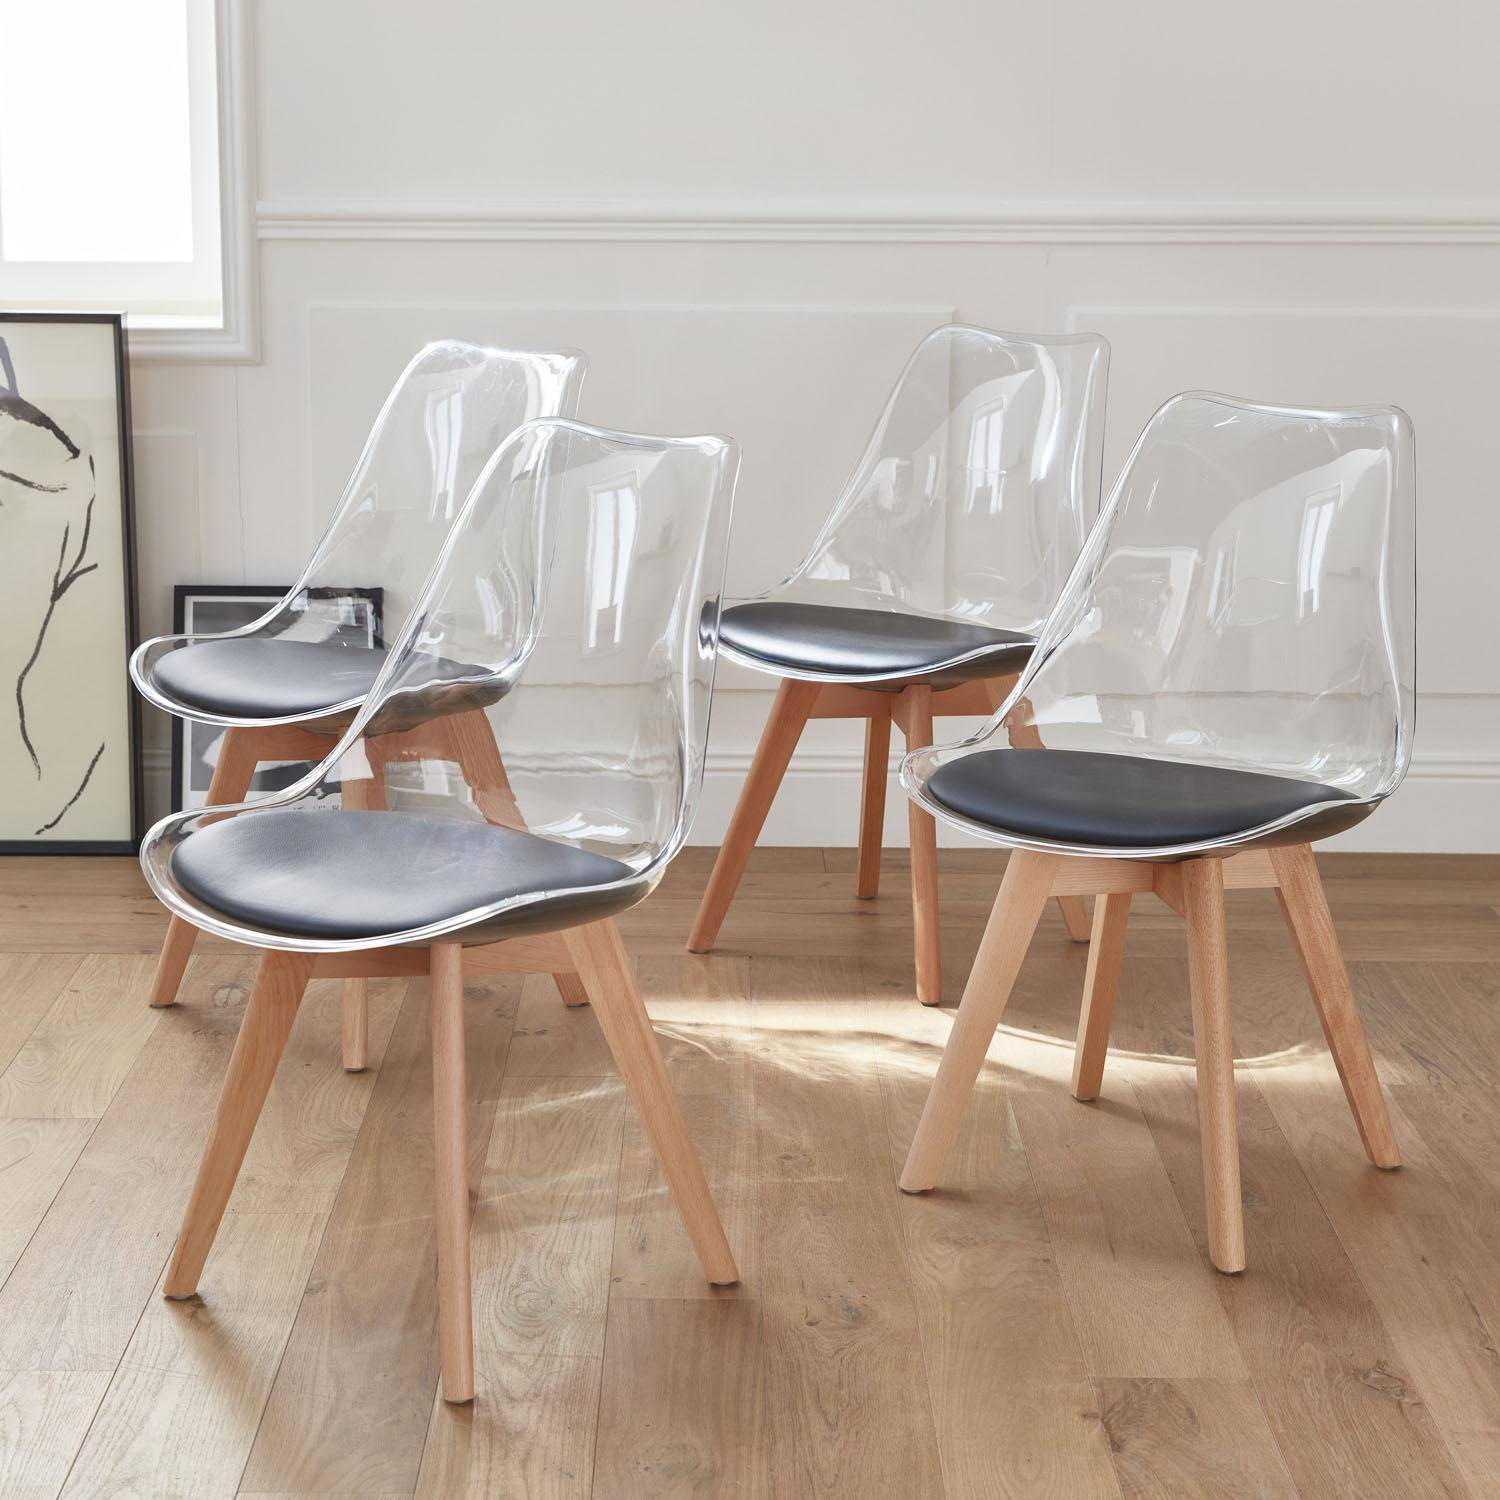 Lot de 4 chaises scandinaves - Lagertha - pieds bois, fauteuils 1 place, coussin noir, coque transparente  Photo1